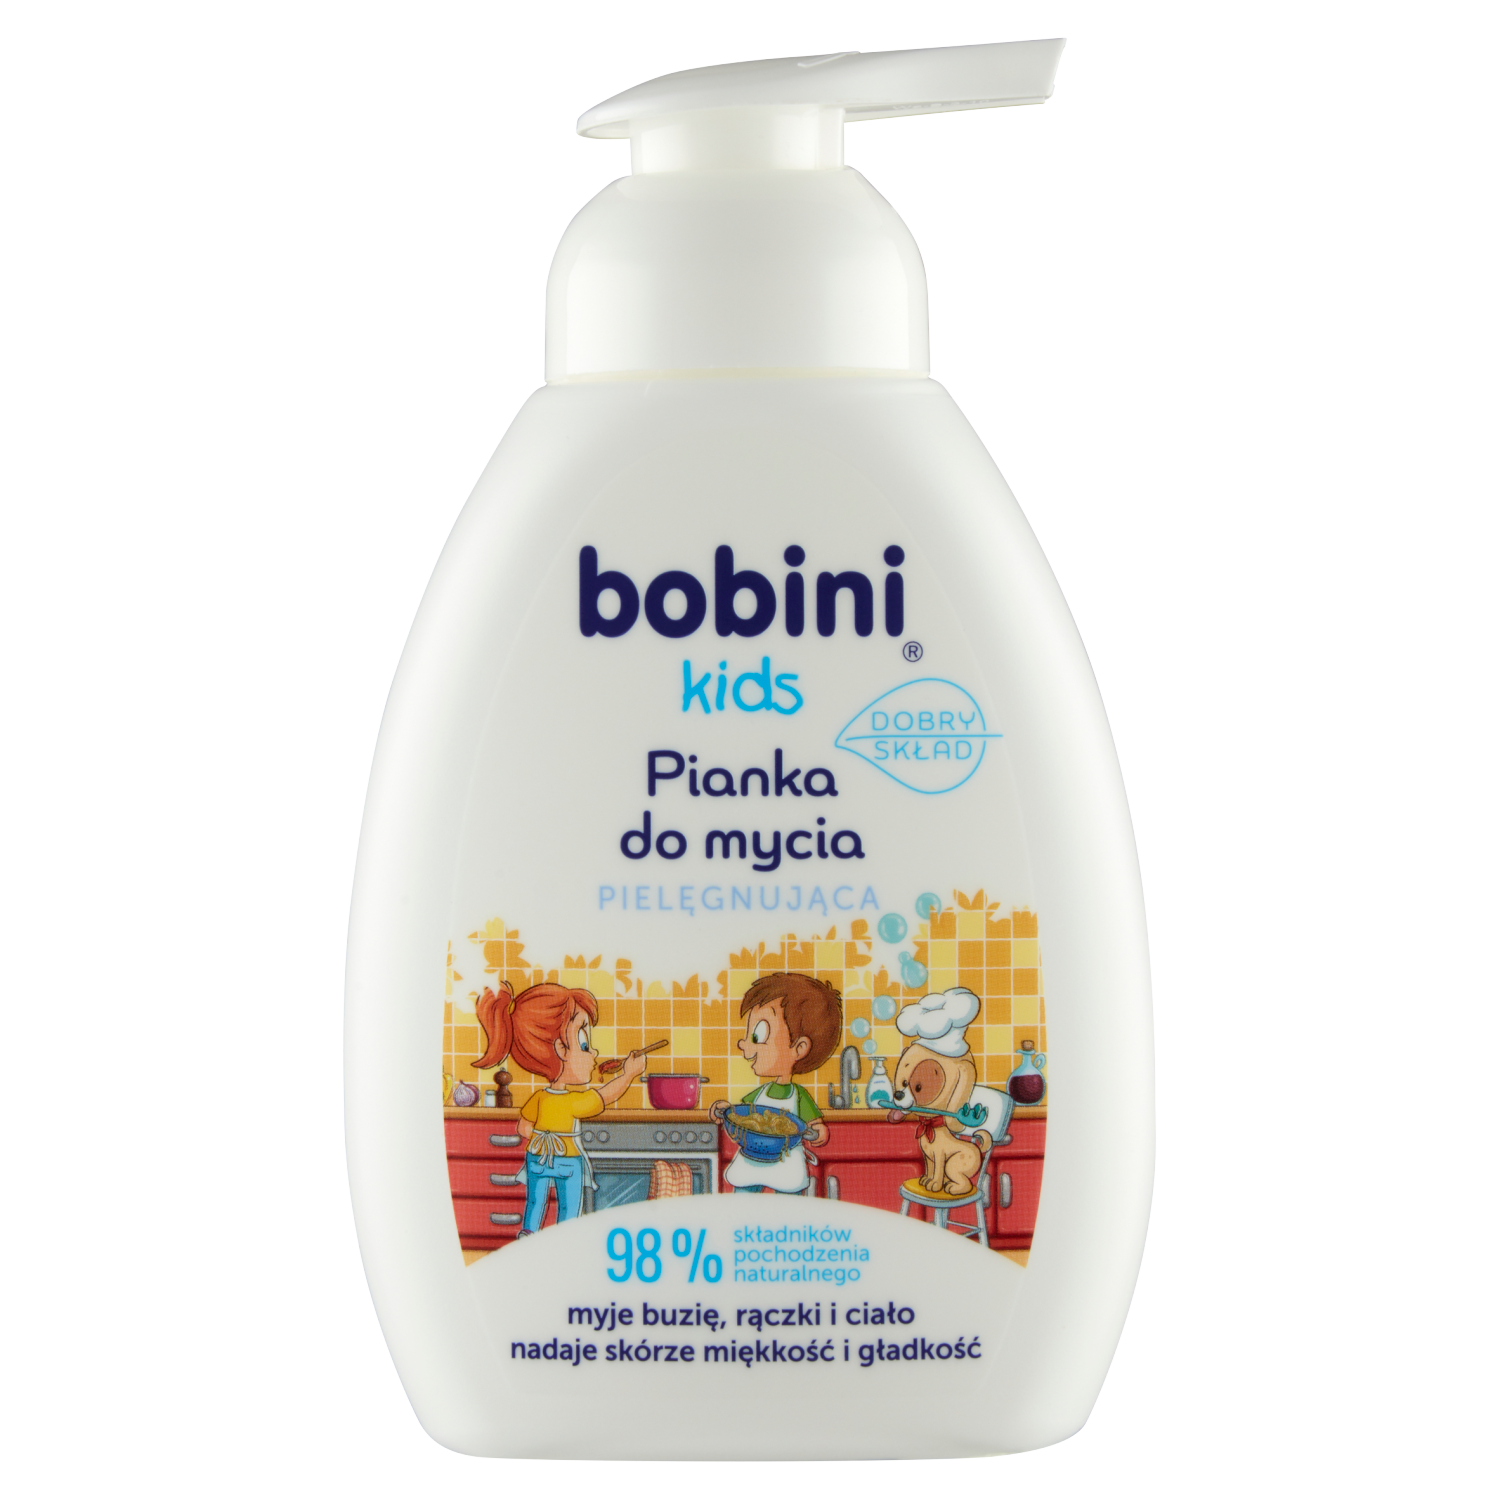 Bobini Lama pianka do mycia dla dzieci, 300 ml | hebe.pl